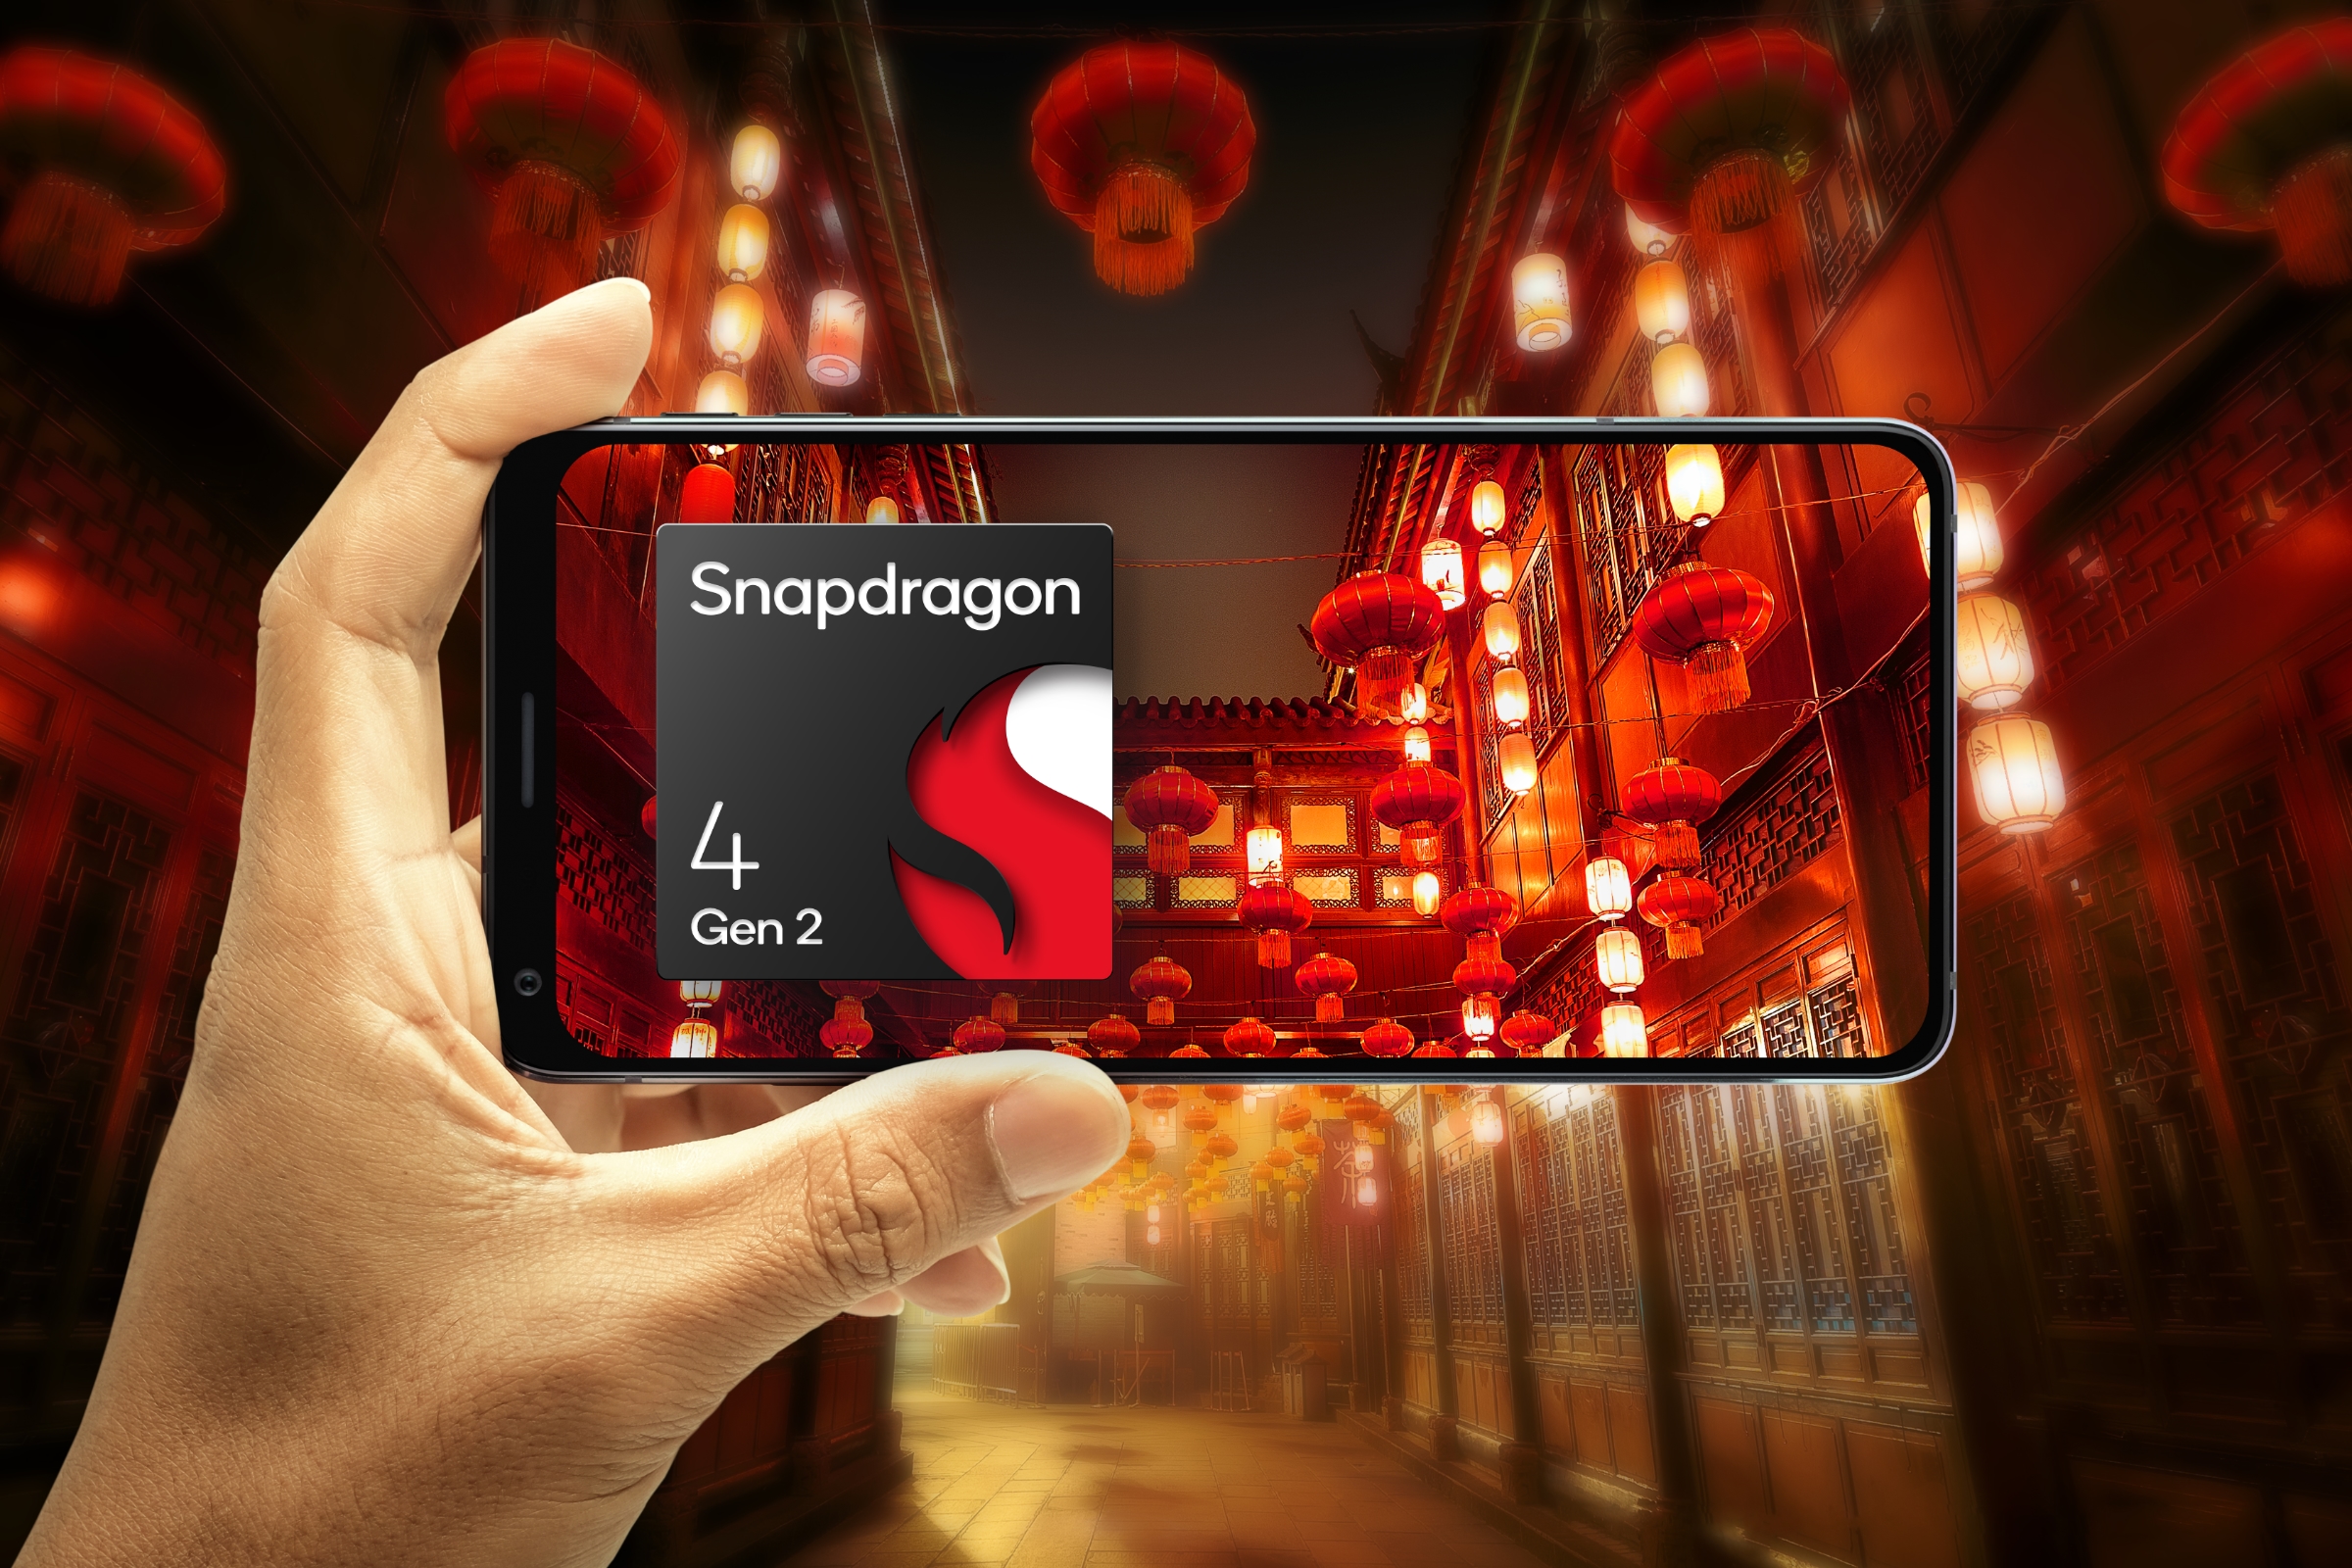 Mão segurando o telefone na orientação paisagem com foco em uma cena ilustrada de lanternas chinesas com o logotipo Qualcomm Snapdragon 4 Gen 2.